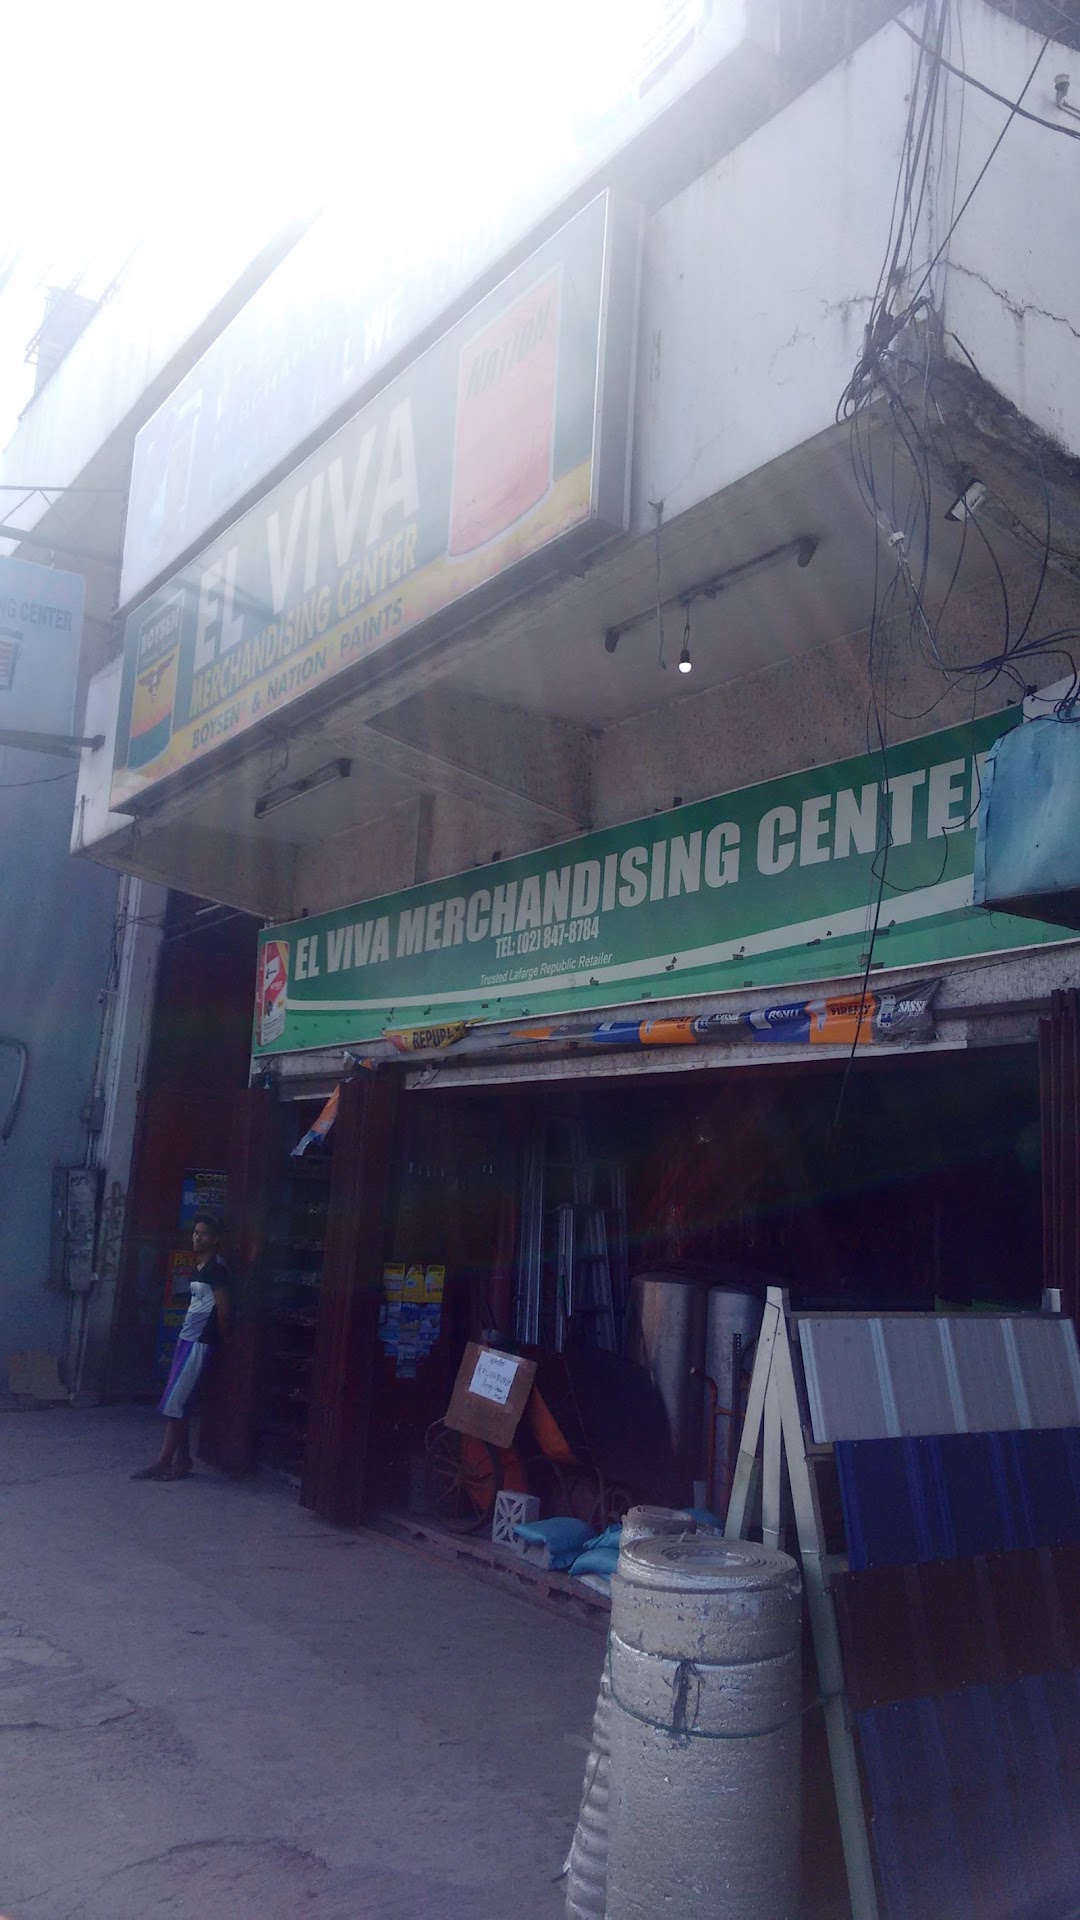 El Viva Merchandising Center